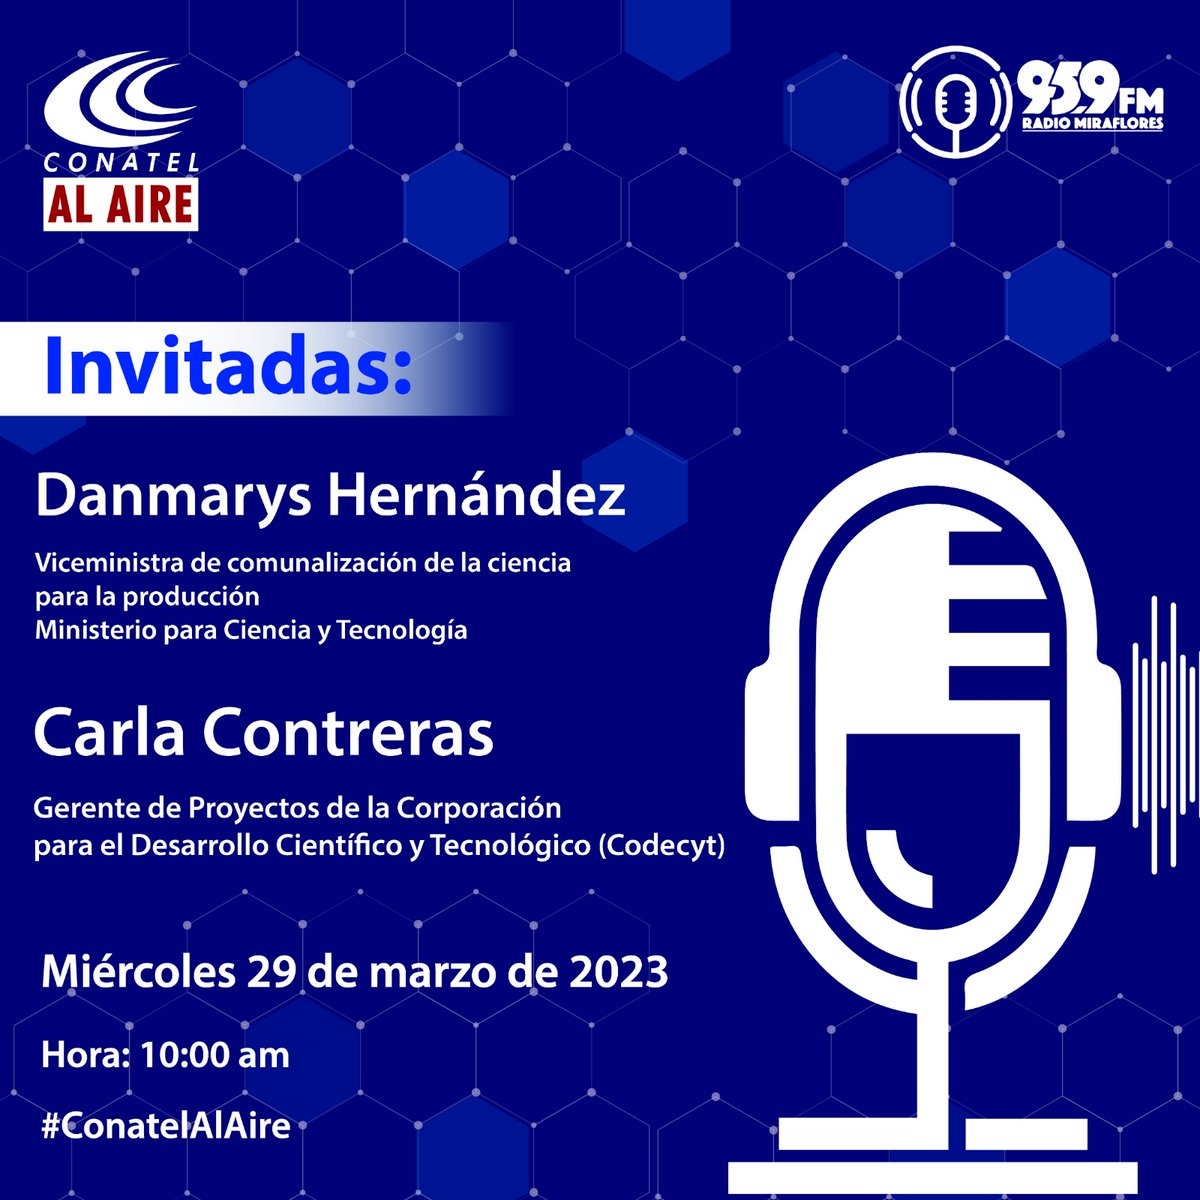 ATENTOS 📢 Este miércoles por @SomosRMNoticias a las 10:00AM EN #ConatelAlAire 📻

Invitadas especiales @cytdanmarys y la bióloga Carla Contreras.

#CienciaSoberana #CienciaMujer #DuroContraLaCorrupcion #Venezuela